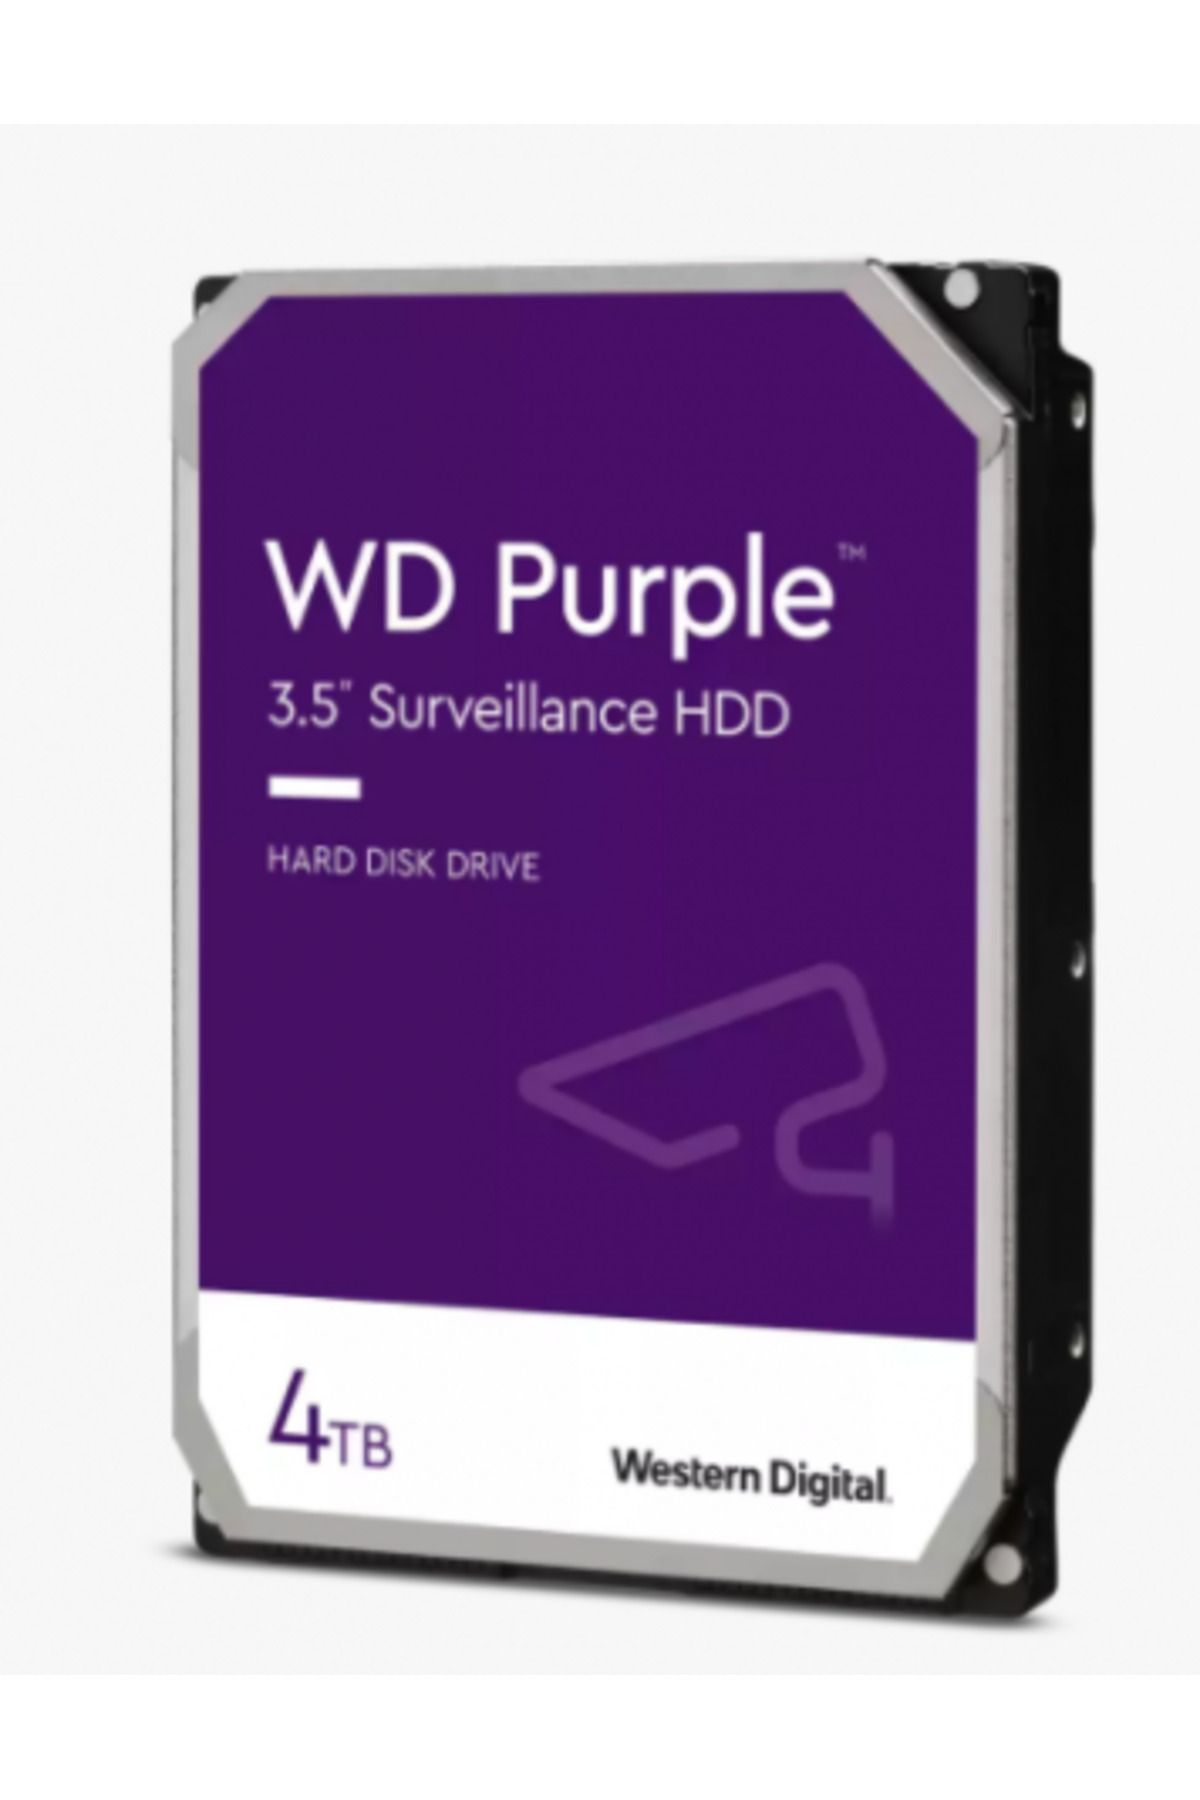 WESTERN DIGITAL 4TB WD Purple SATA 6Gb/s 256MB DV 7x24 WD43PURZ